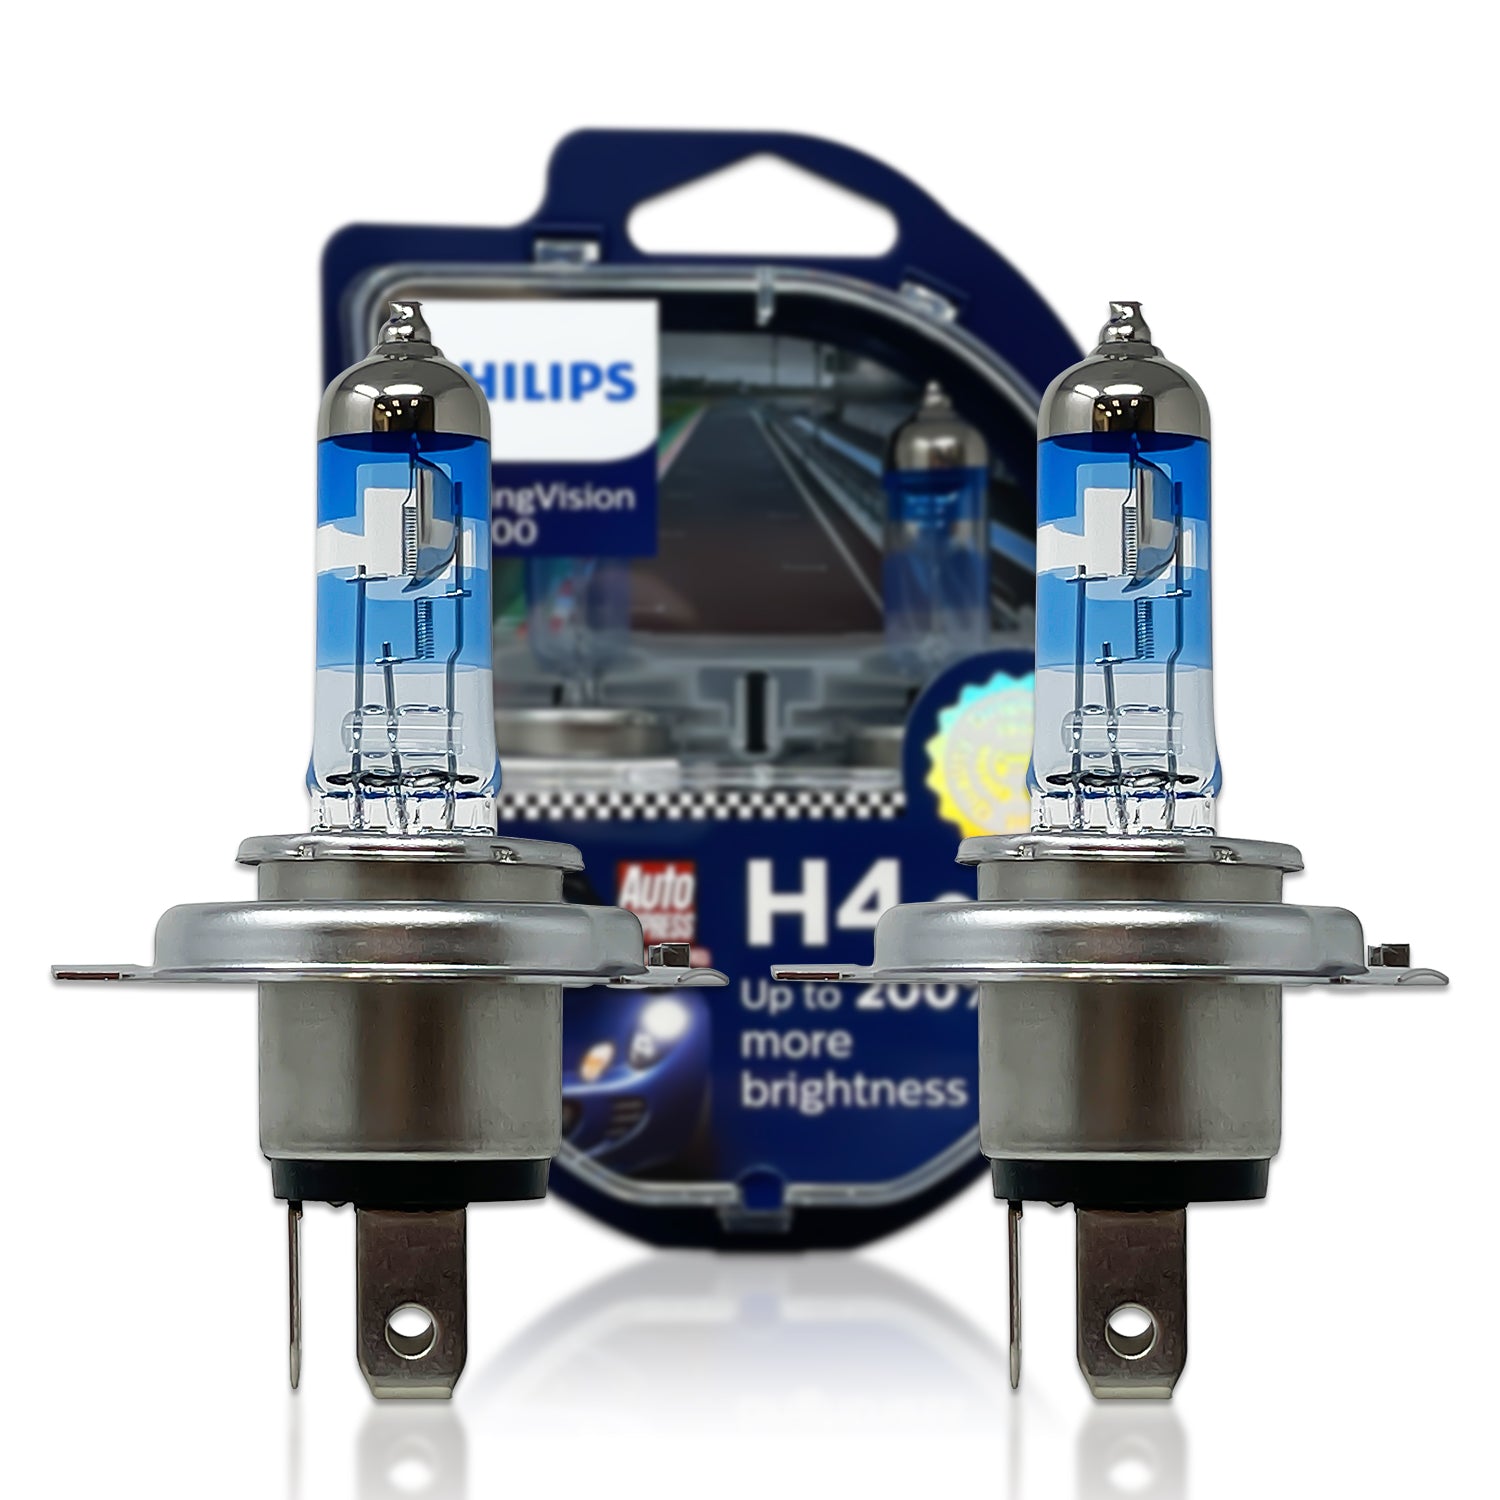 Philips Racing Vision H4 Headlight Bulbs (Twin) price in Saudi Arabia,  Saudi Arabia